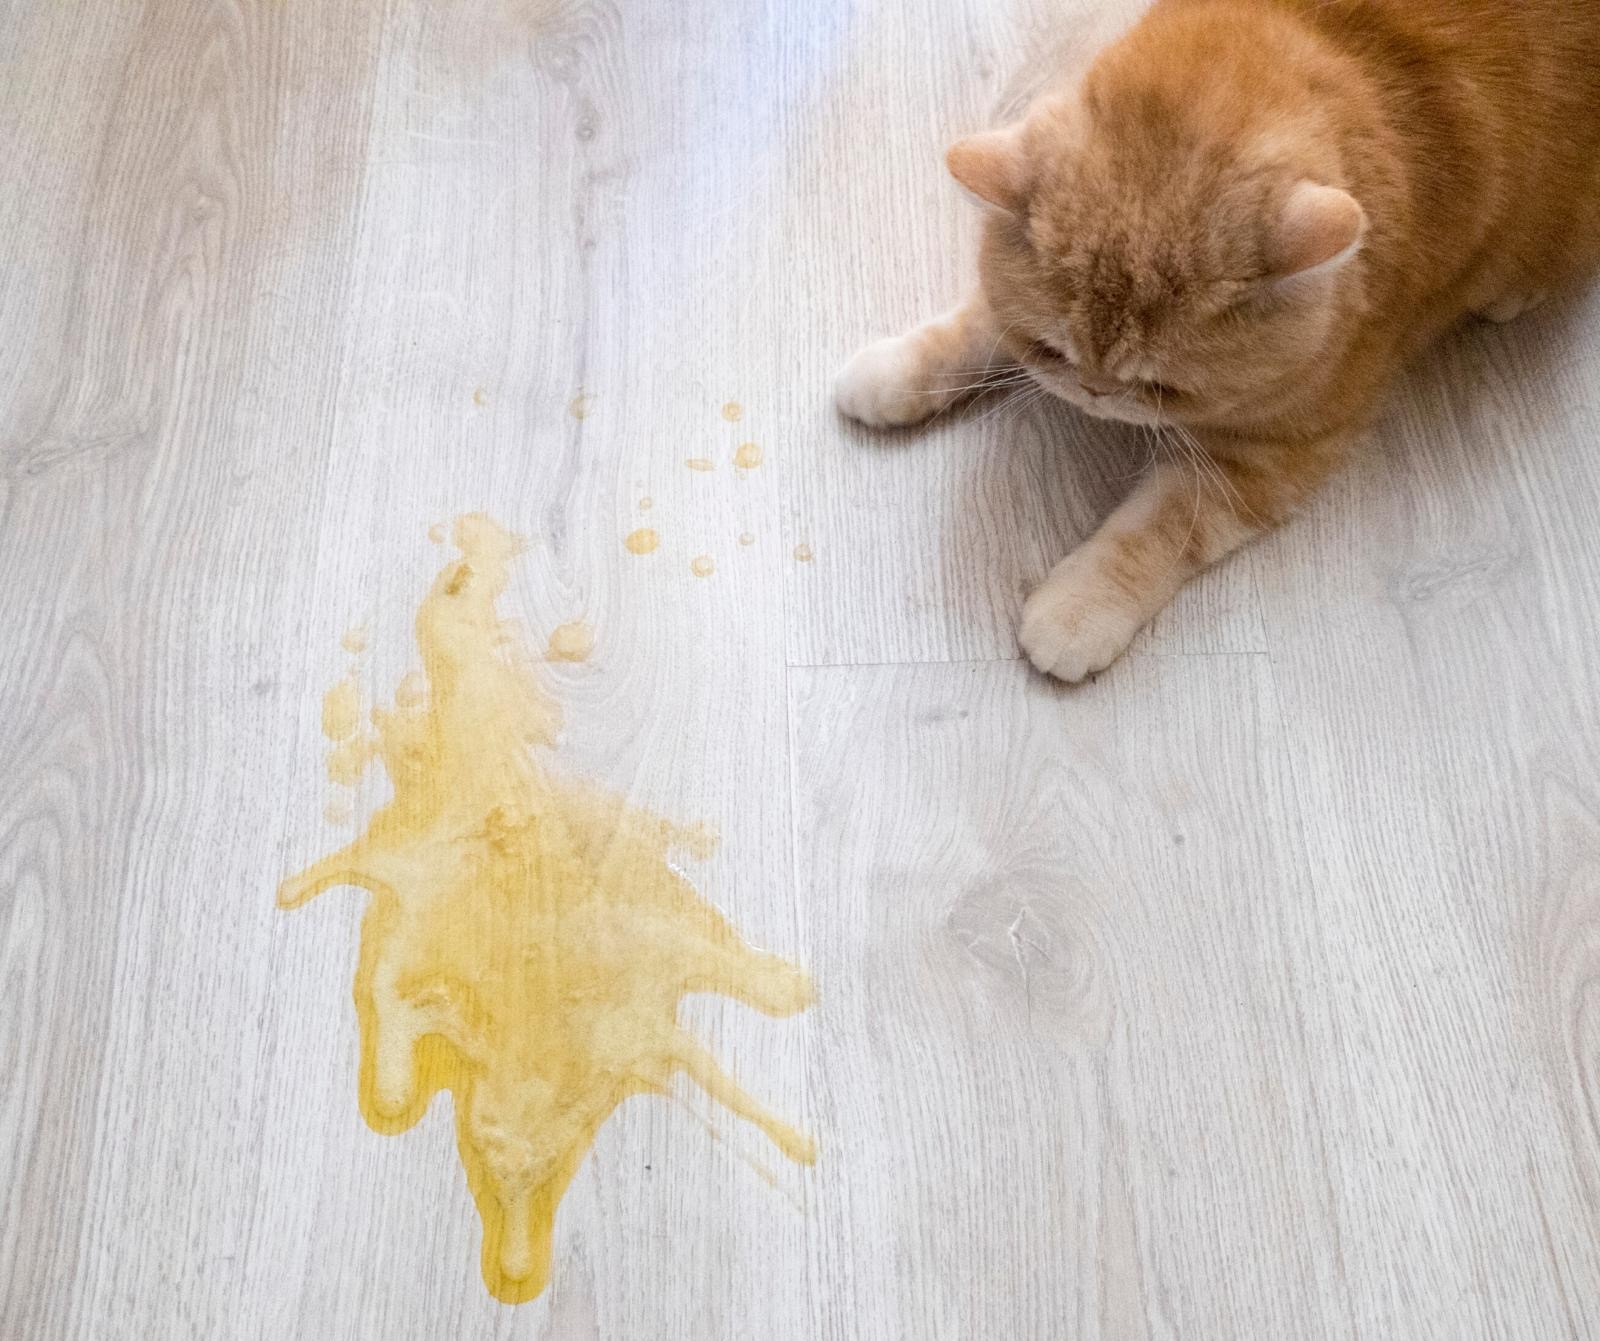 betreuren Enzovoorts hulp in de huishouding Mijn kat plast in huis, wat kan ik doen? - Kattengedrag| De gelukkige  huiskat